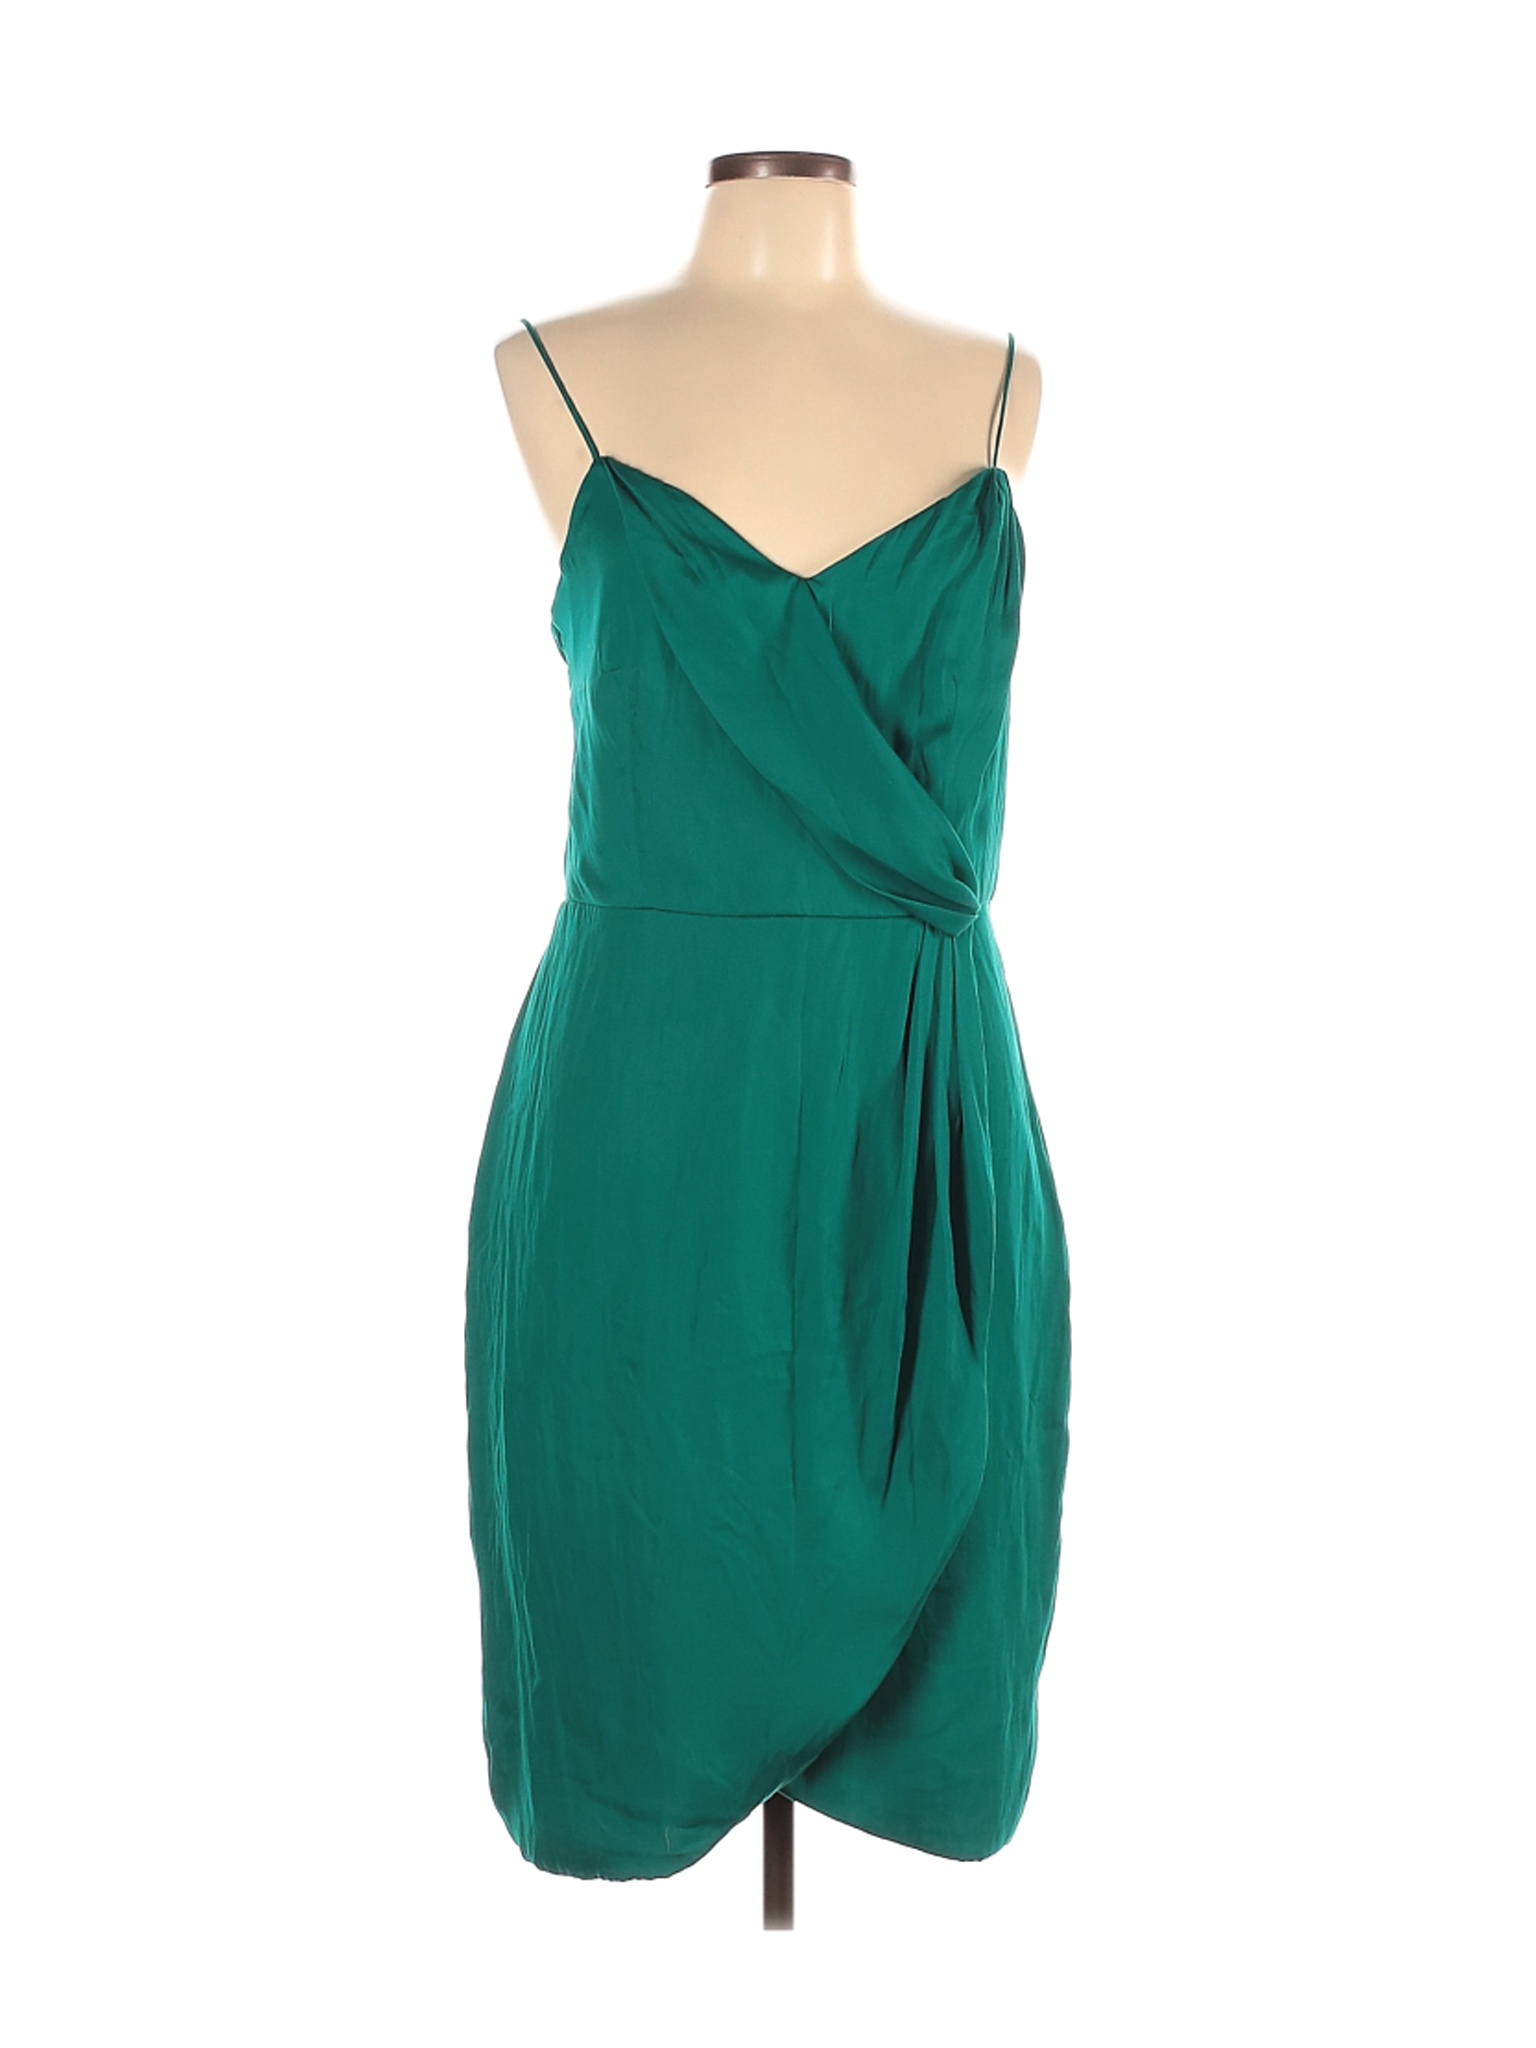 Banana Republic Women Green Casual Dress 12 | eBay